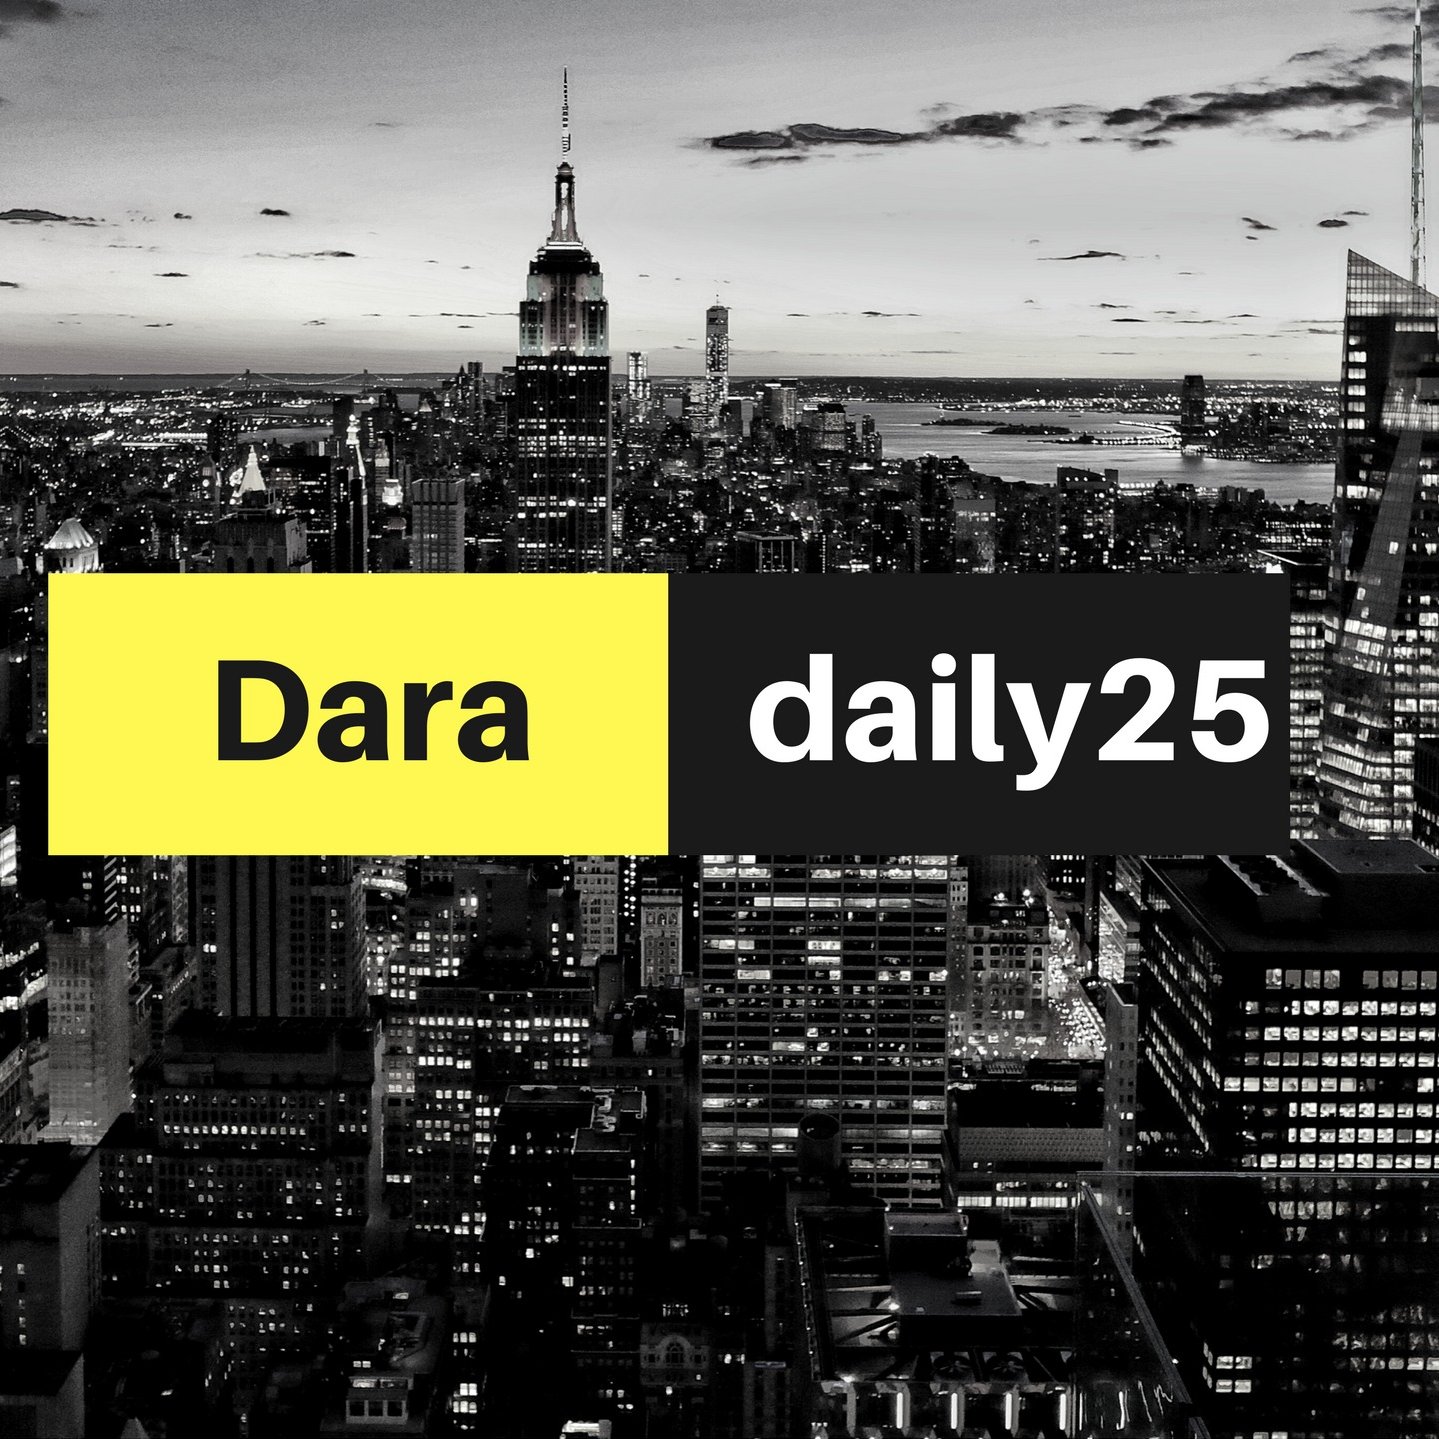 dara daily25